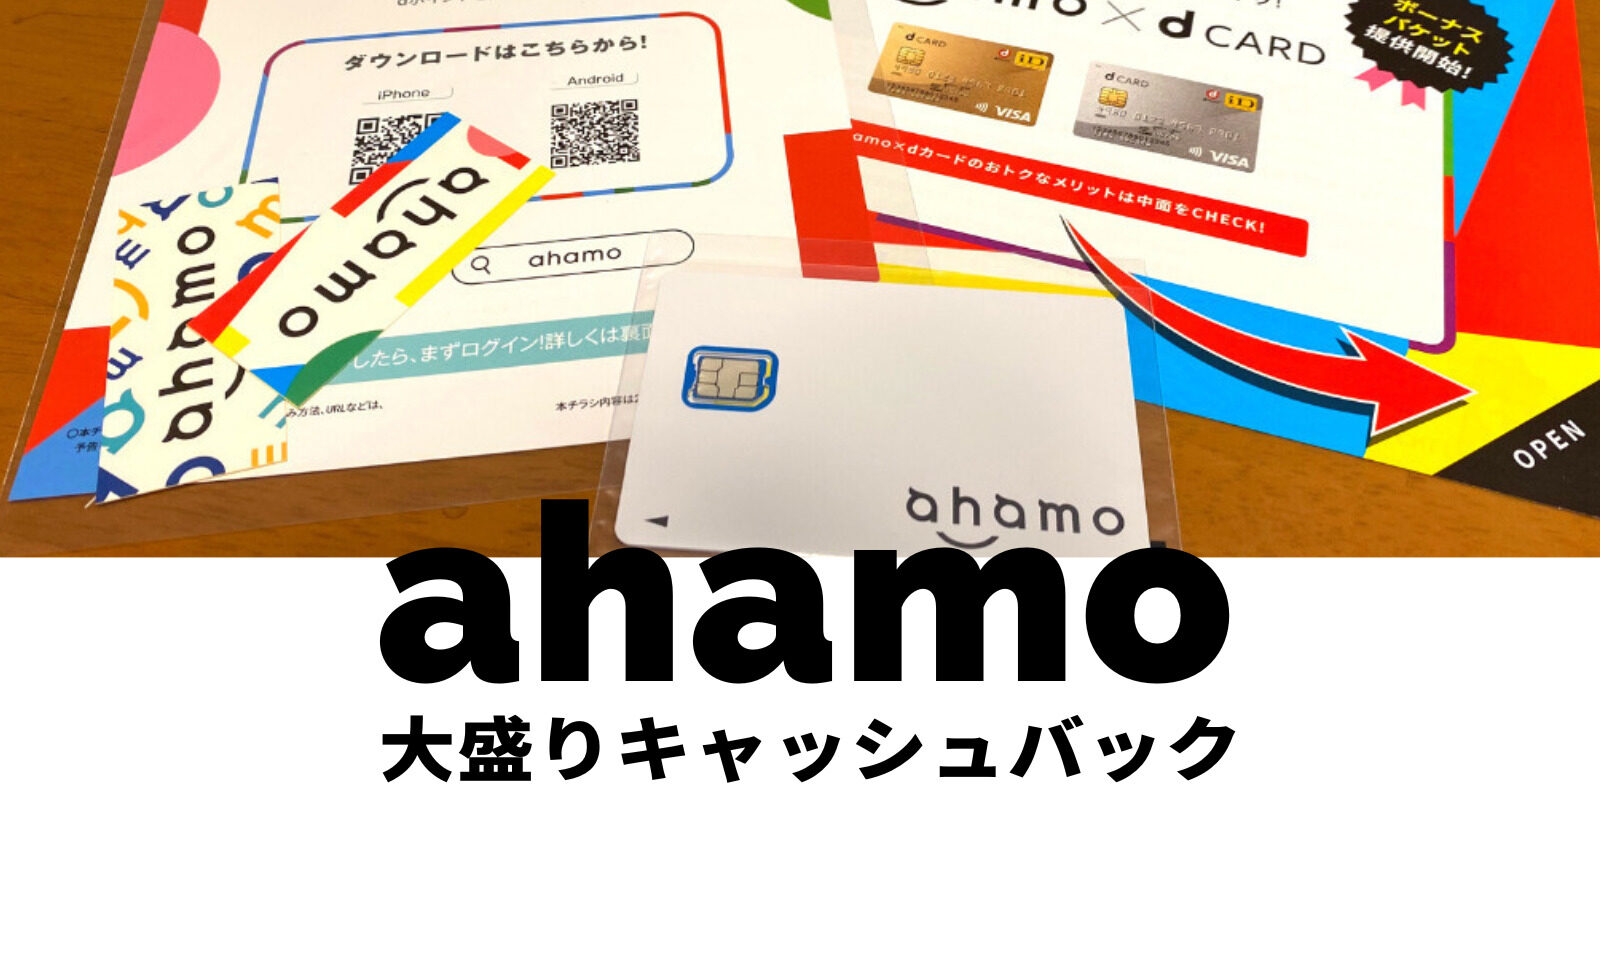 ahamo(アハモ)大盛りオプションが実質0円&無料になるdポイントキャッシュバックを開催！のサムネイル画像